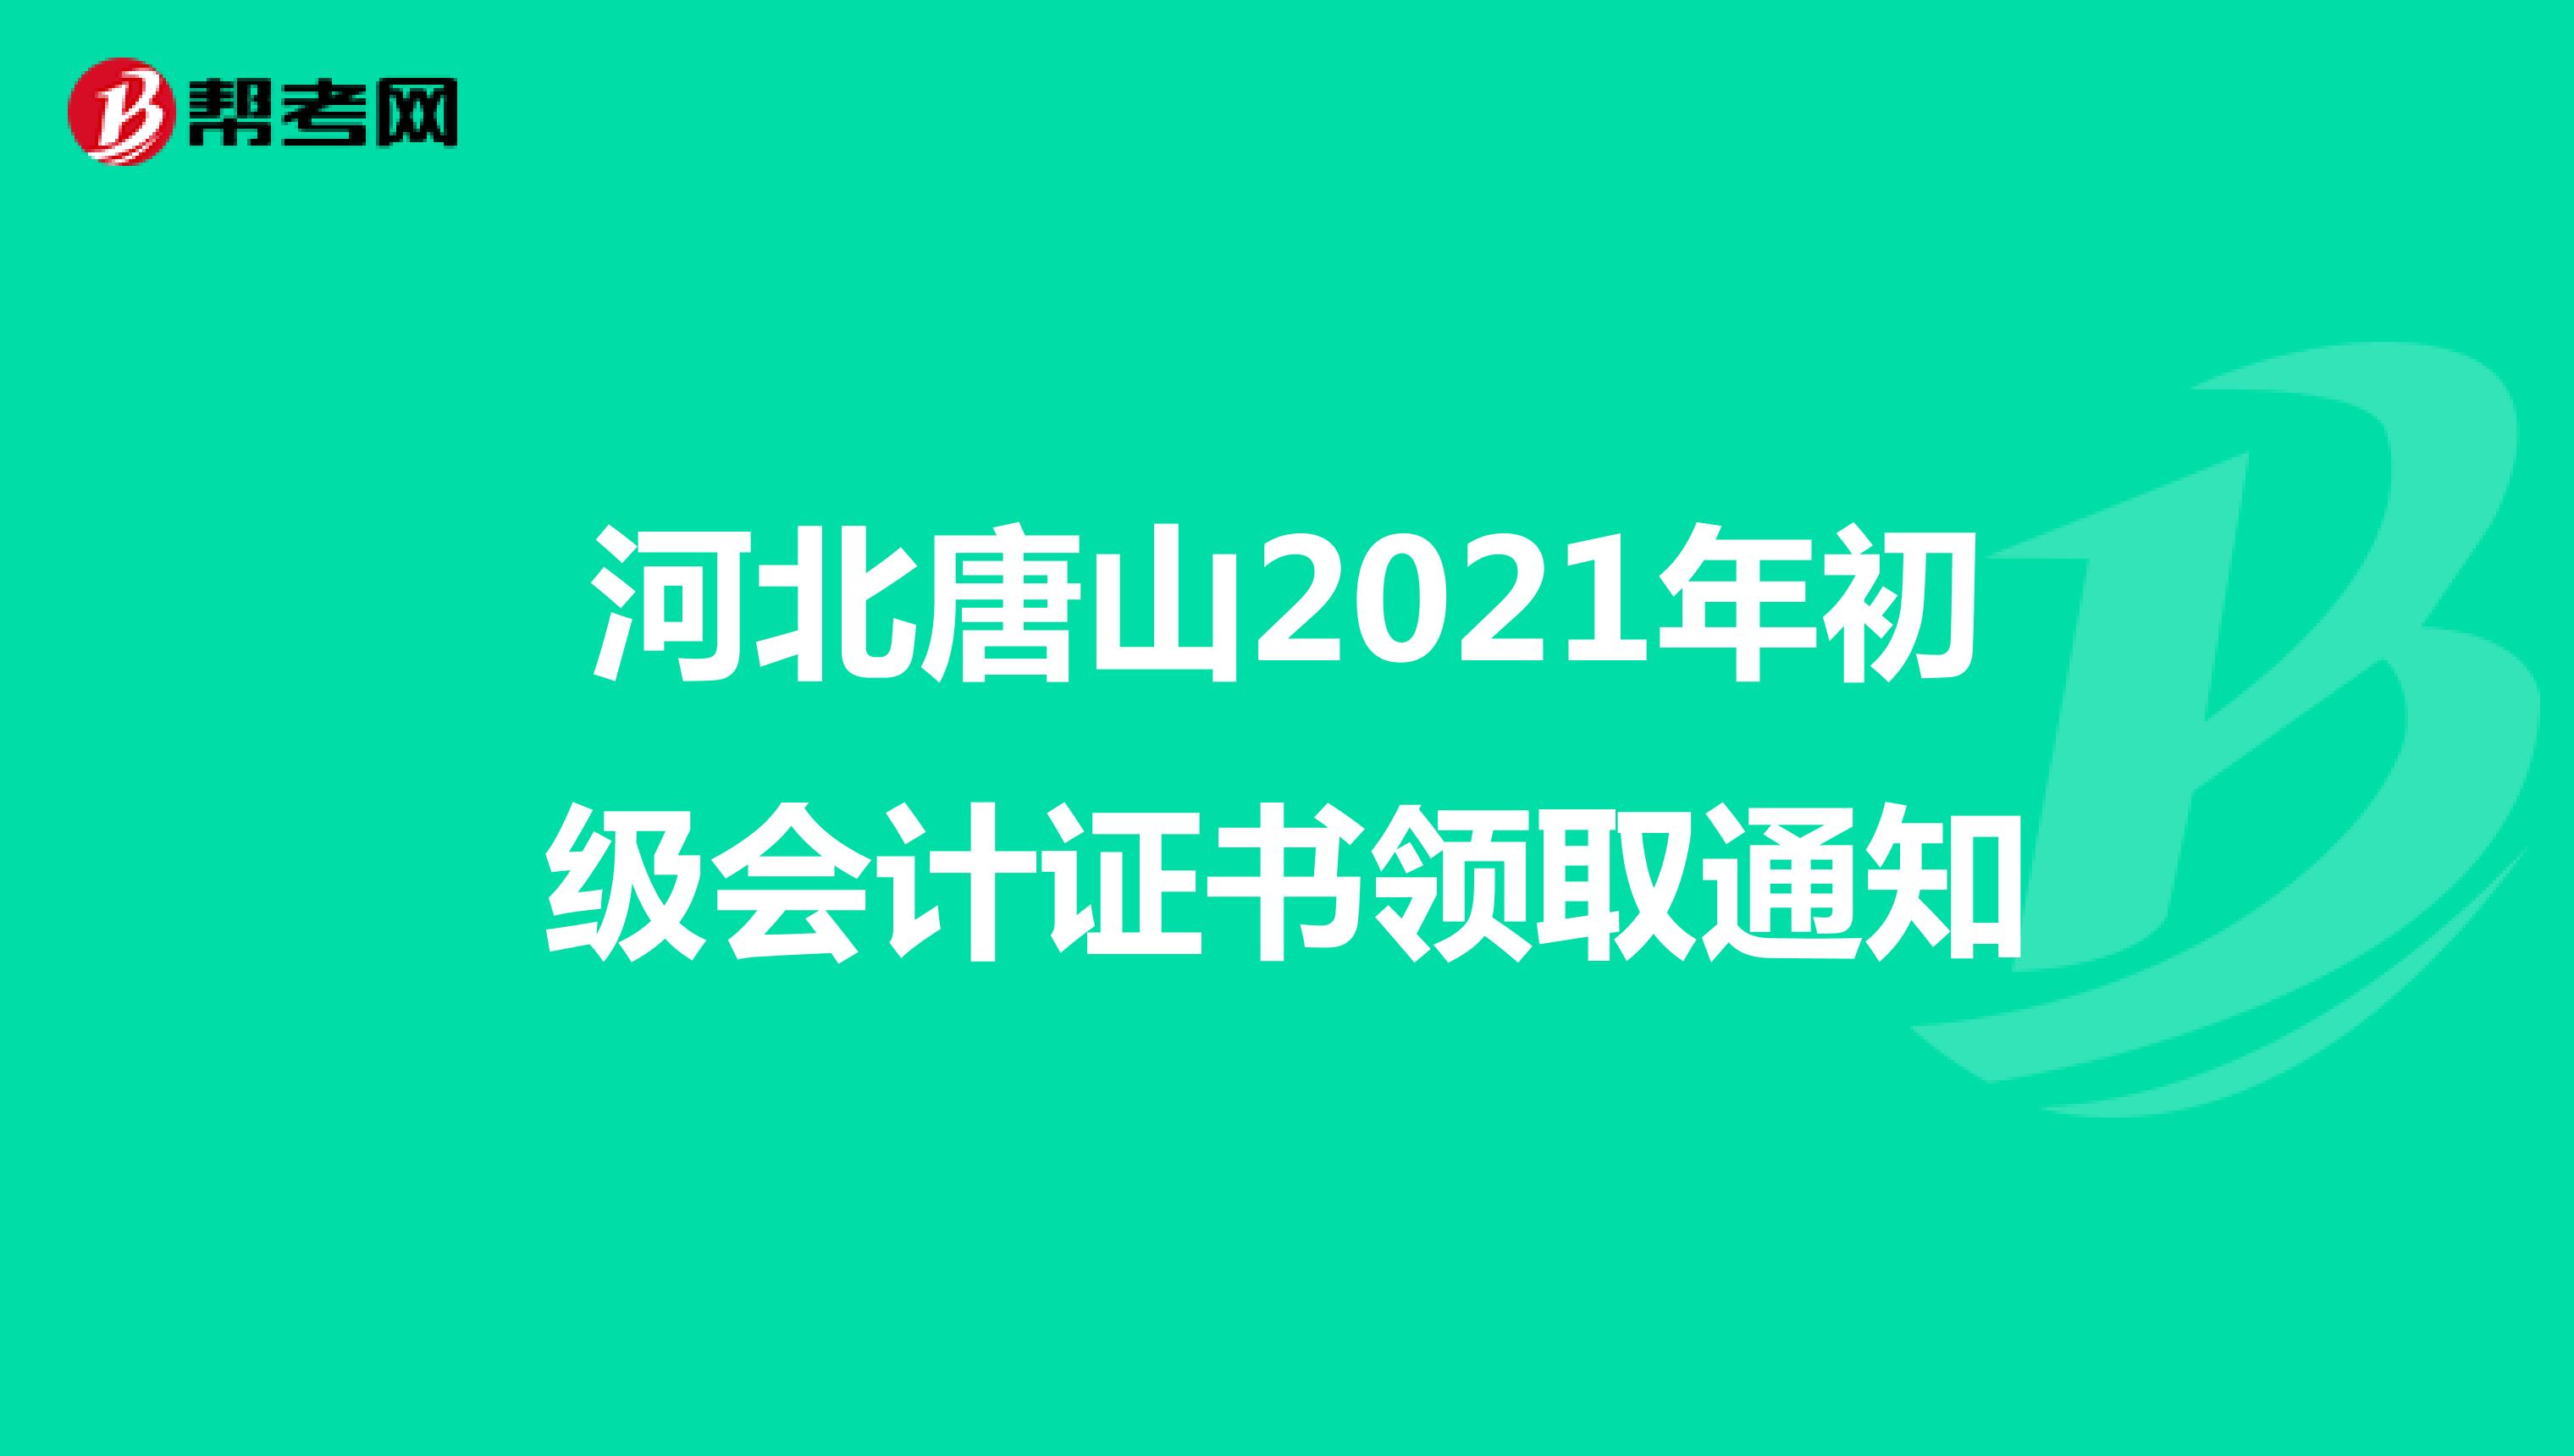 河北唐山2021年初级会计证书领取通知